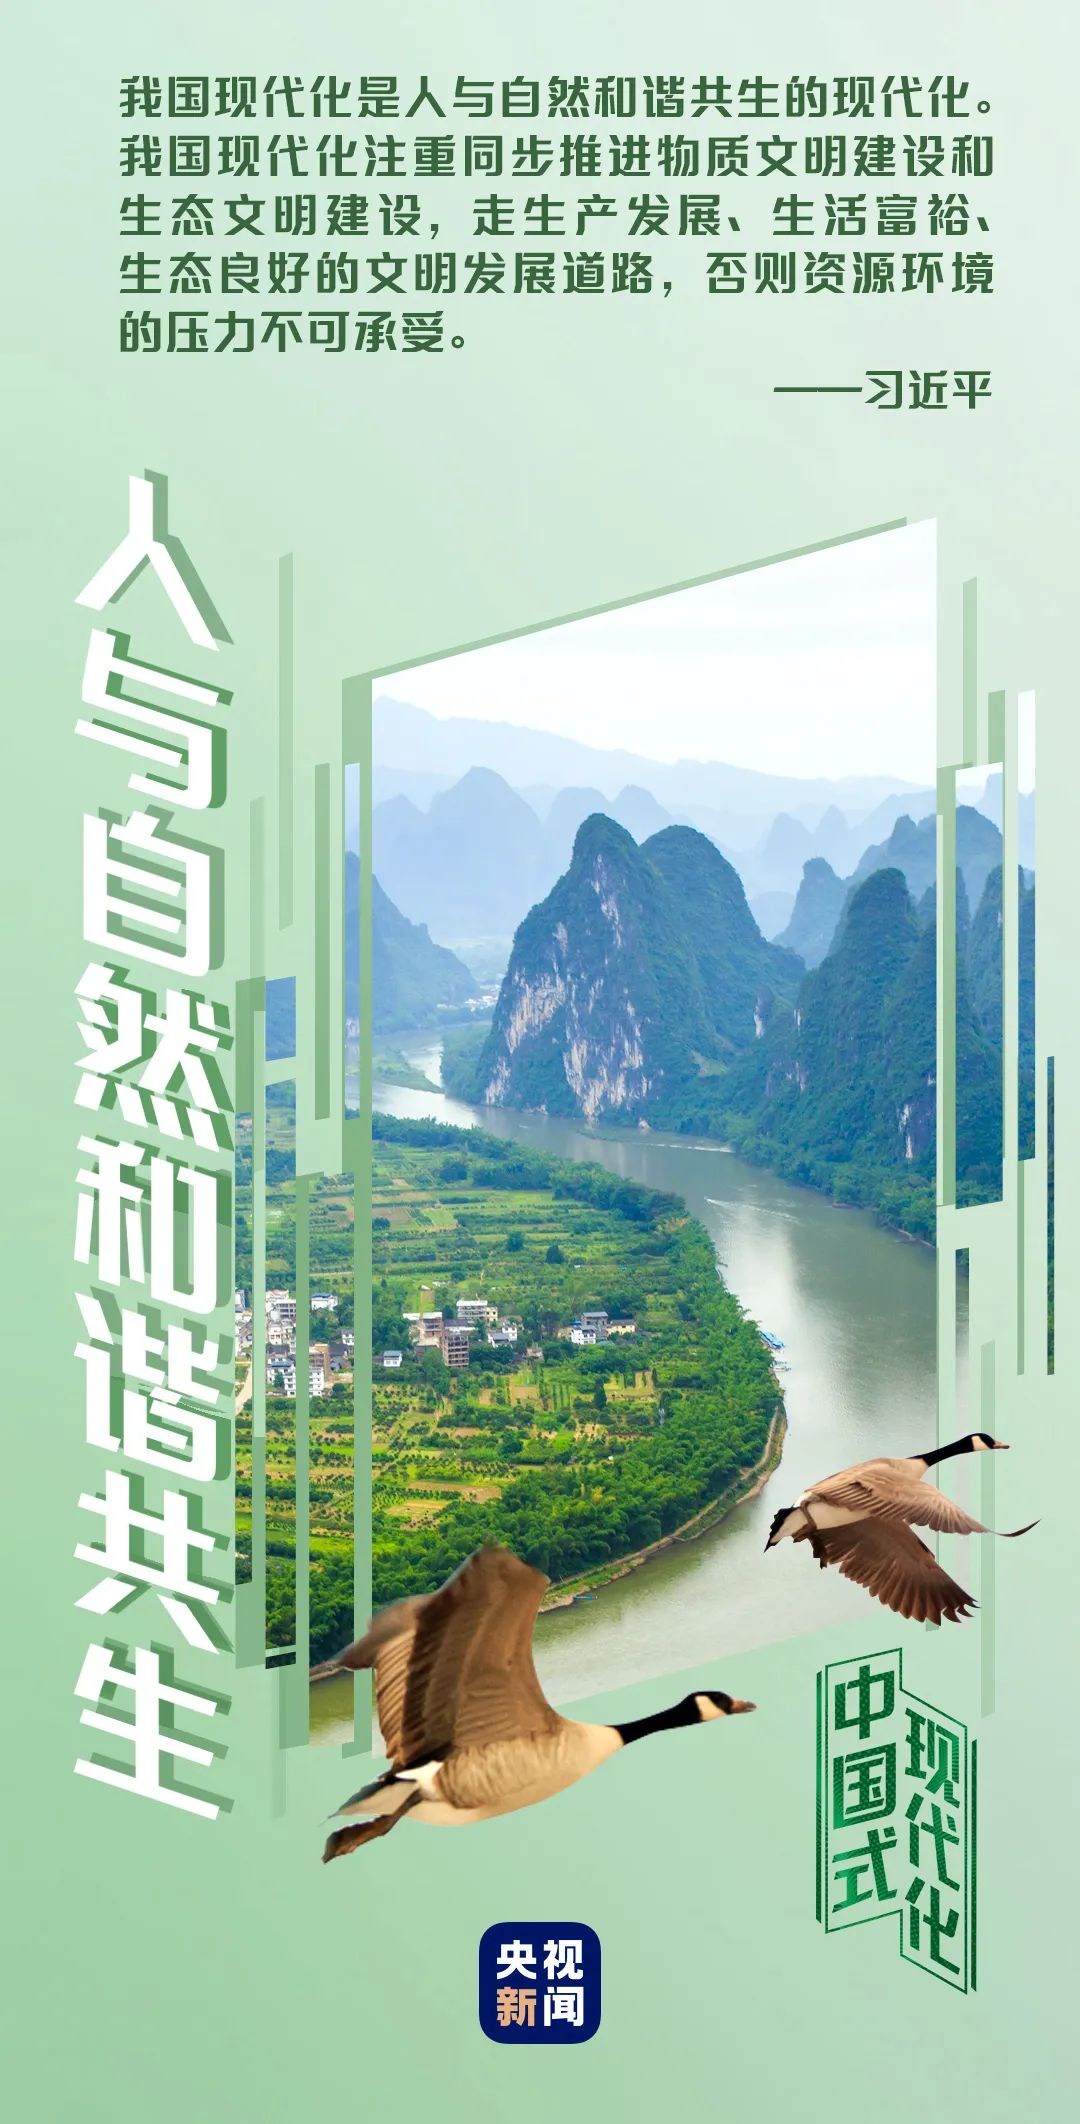 中国式现代化丨人与自然和谐共生1